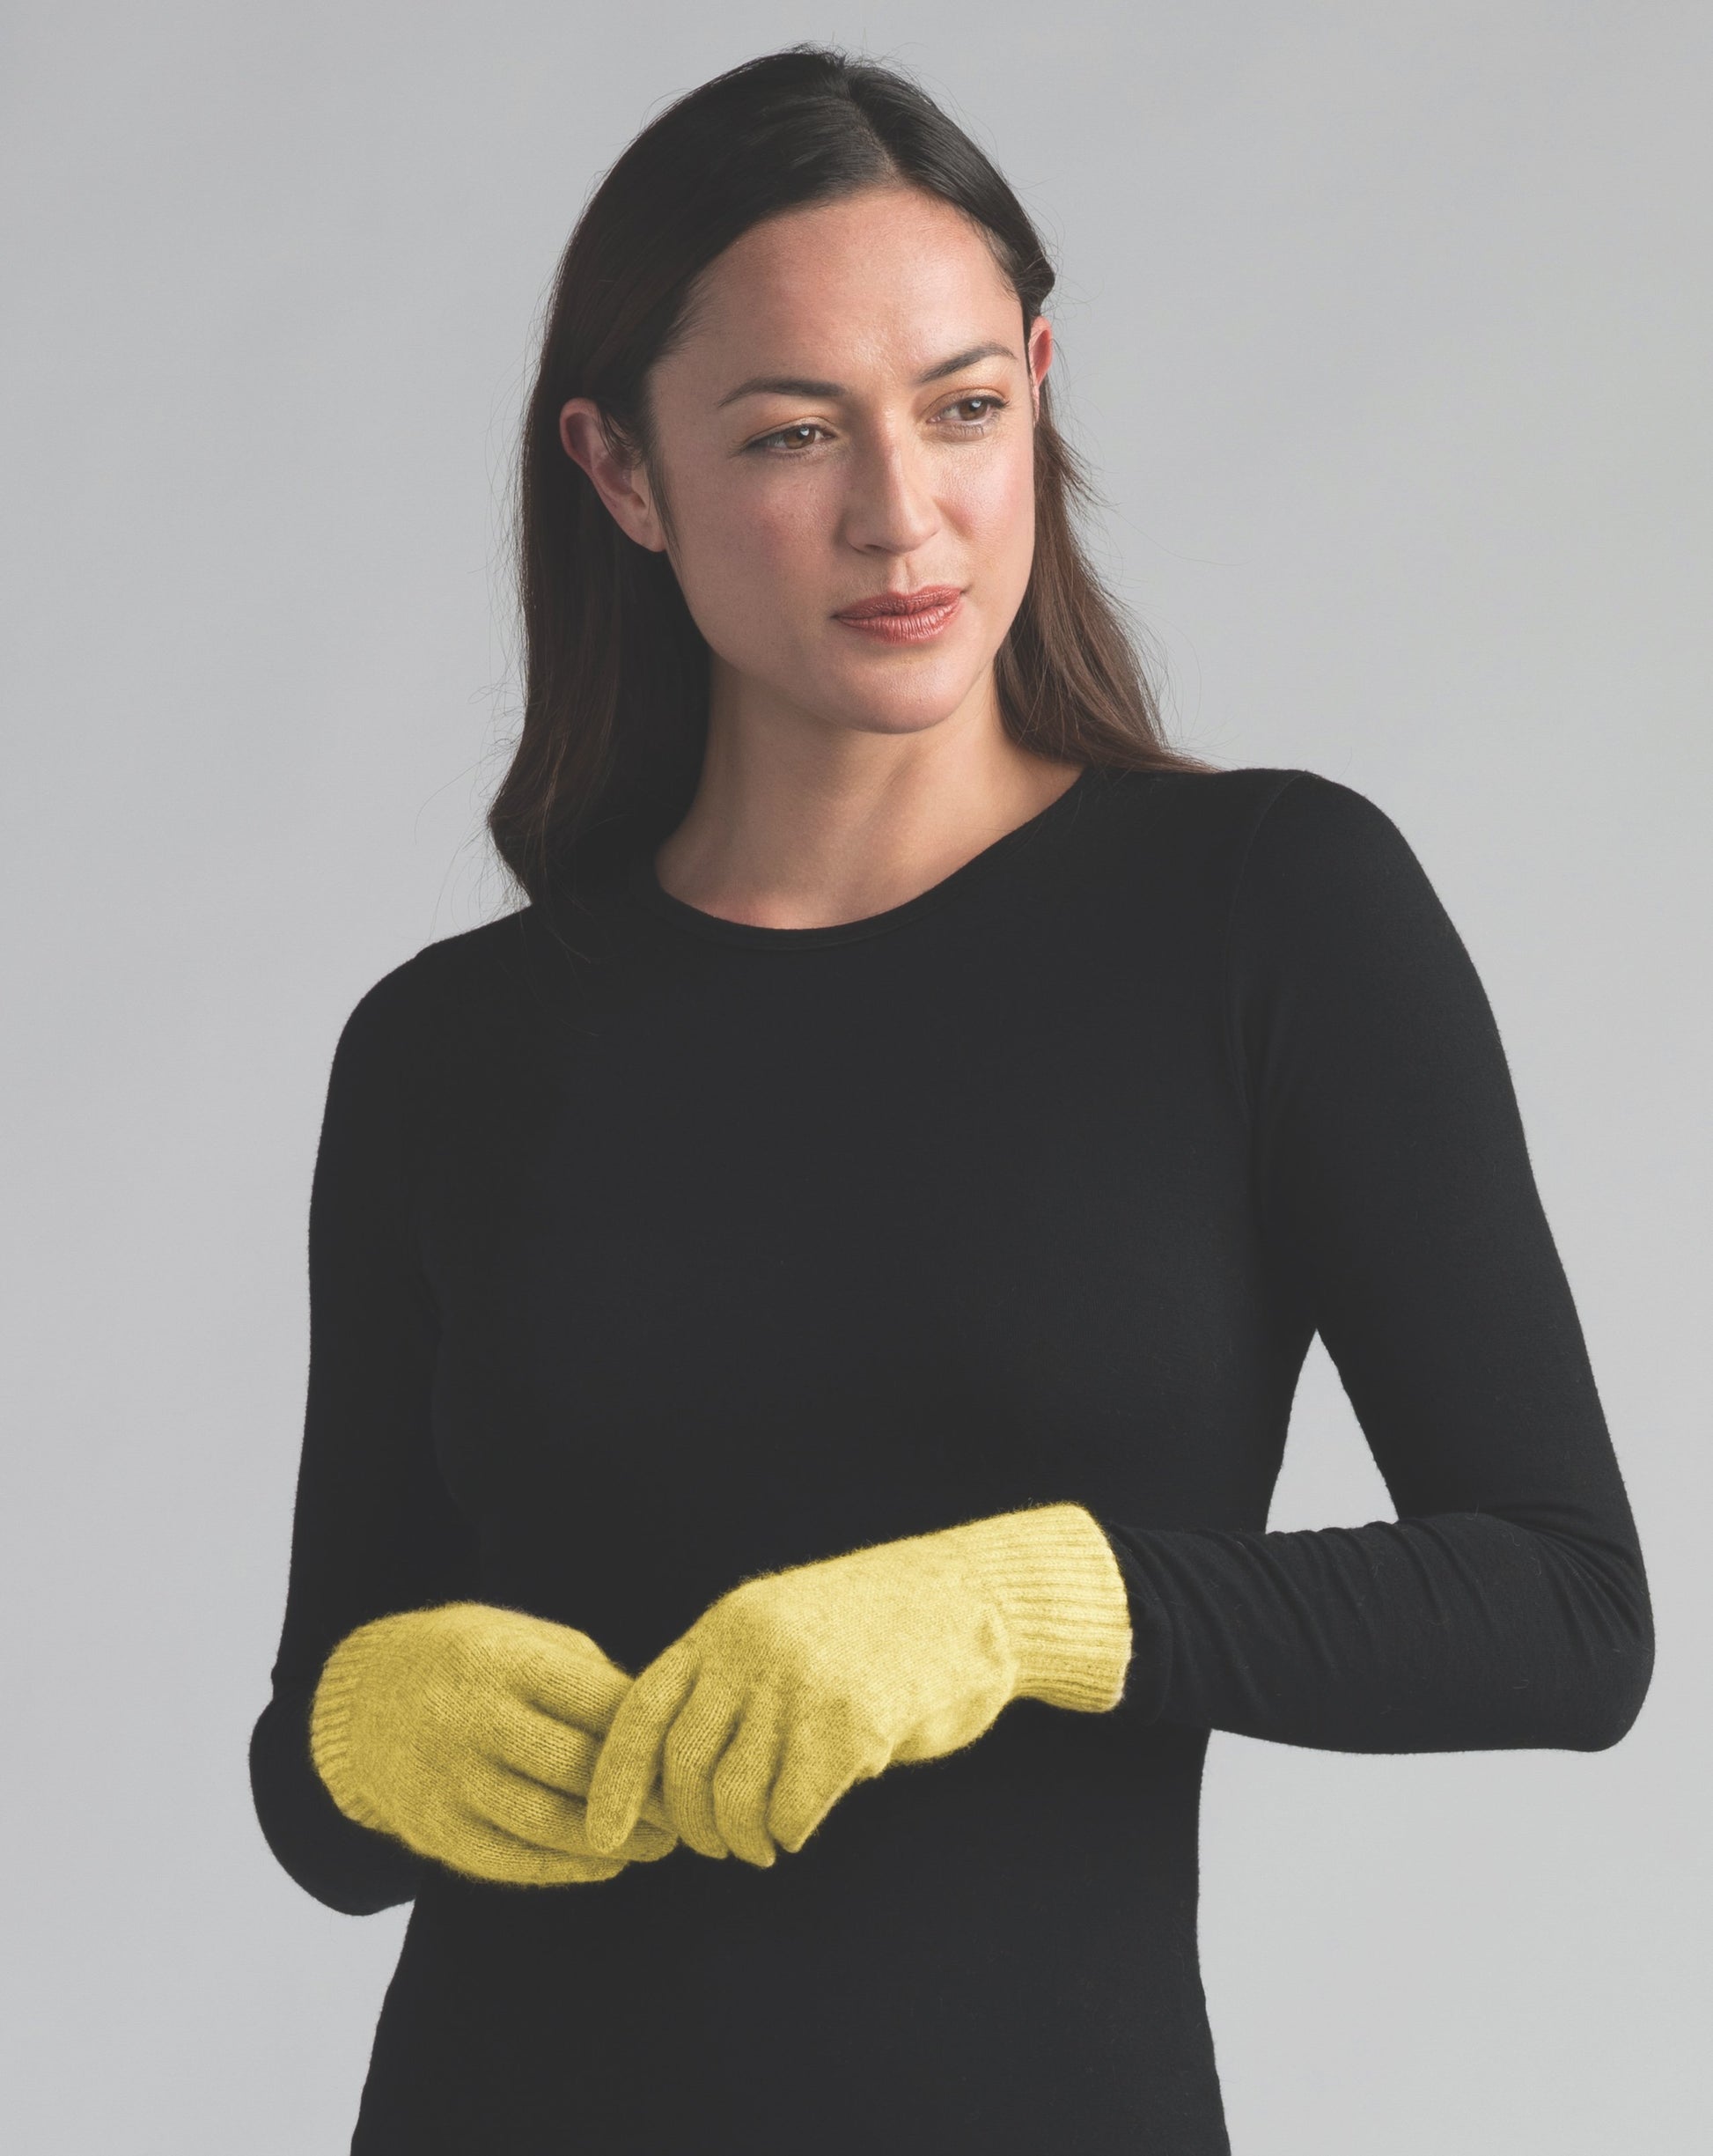 Mm Gloves Accessories